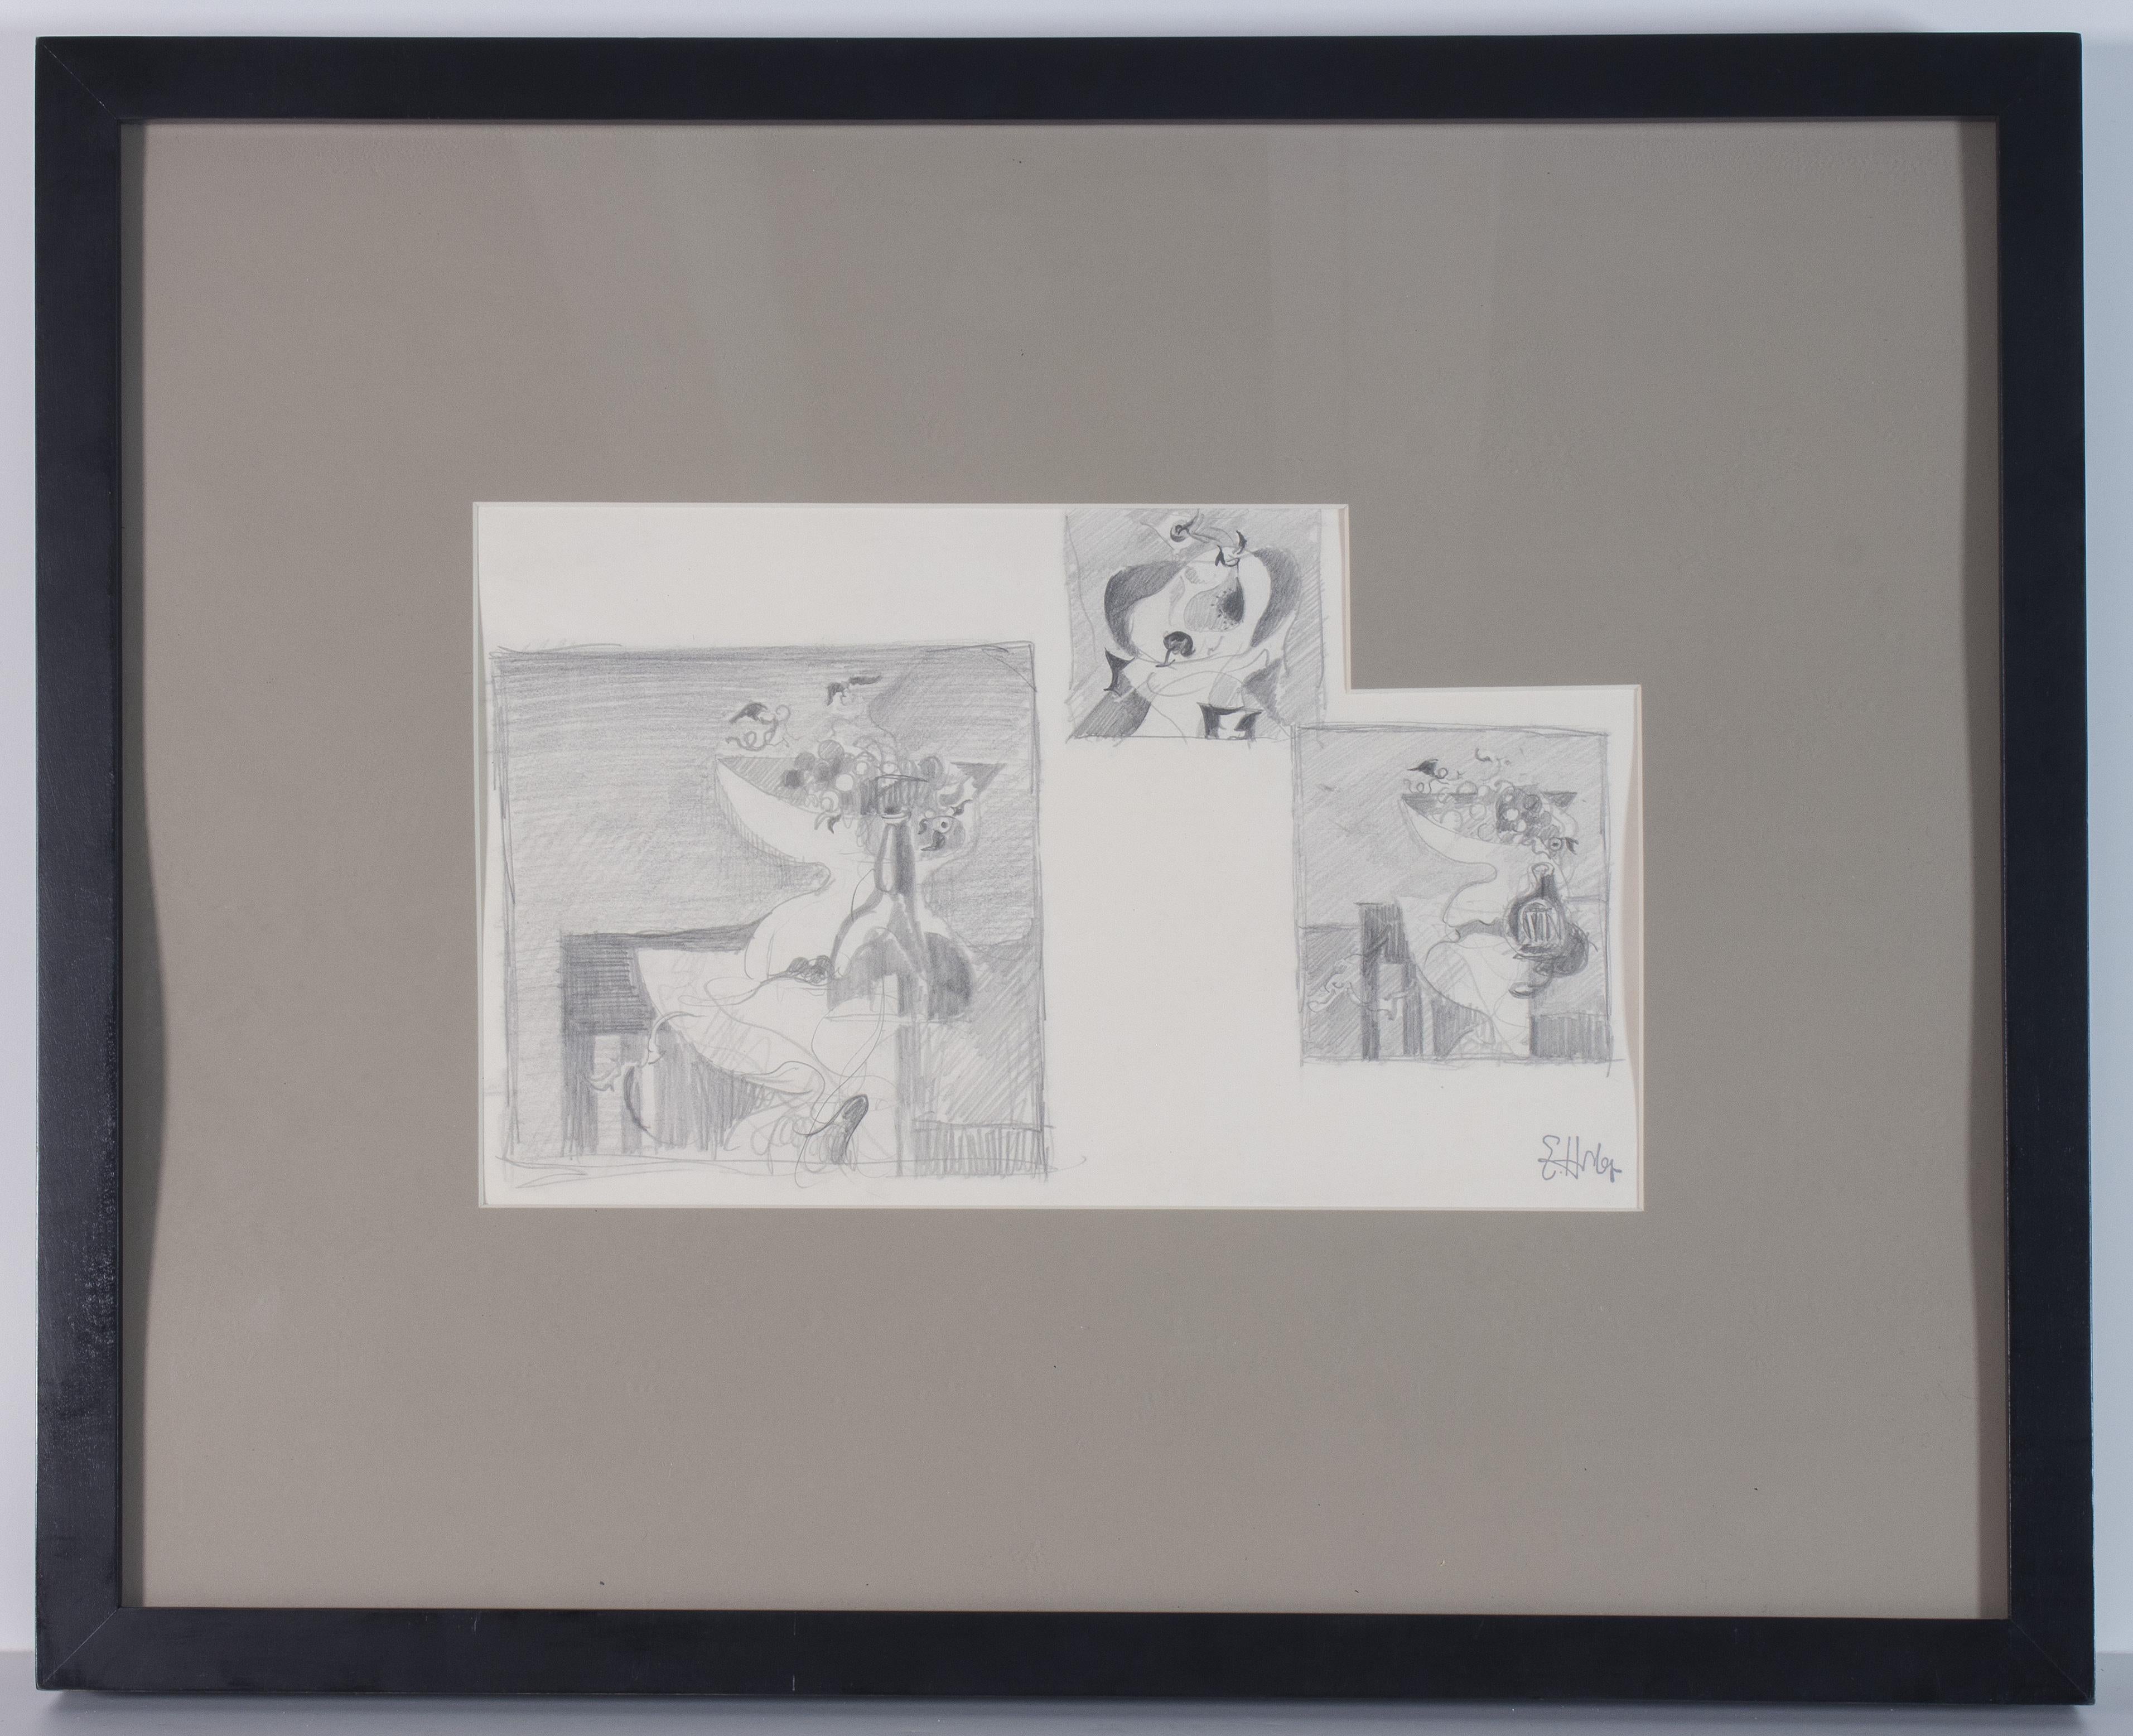 Earl Horter (Amerikaner, 1883-1940)
Drei Stillleben-Studien
Bleistift auf Papier, 7 1/4 x 13 1/2 Zoll; Gerahmt: 17 x 21 Zoll

HINWEIS: Obwohl das Werk ursprünglich mit archivtauglichem Material montiert war, wurde es nicht eingekapselt, und der